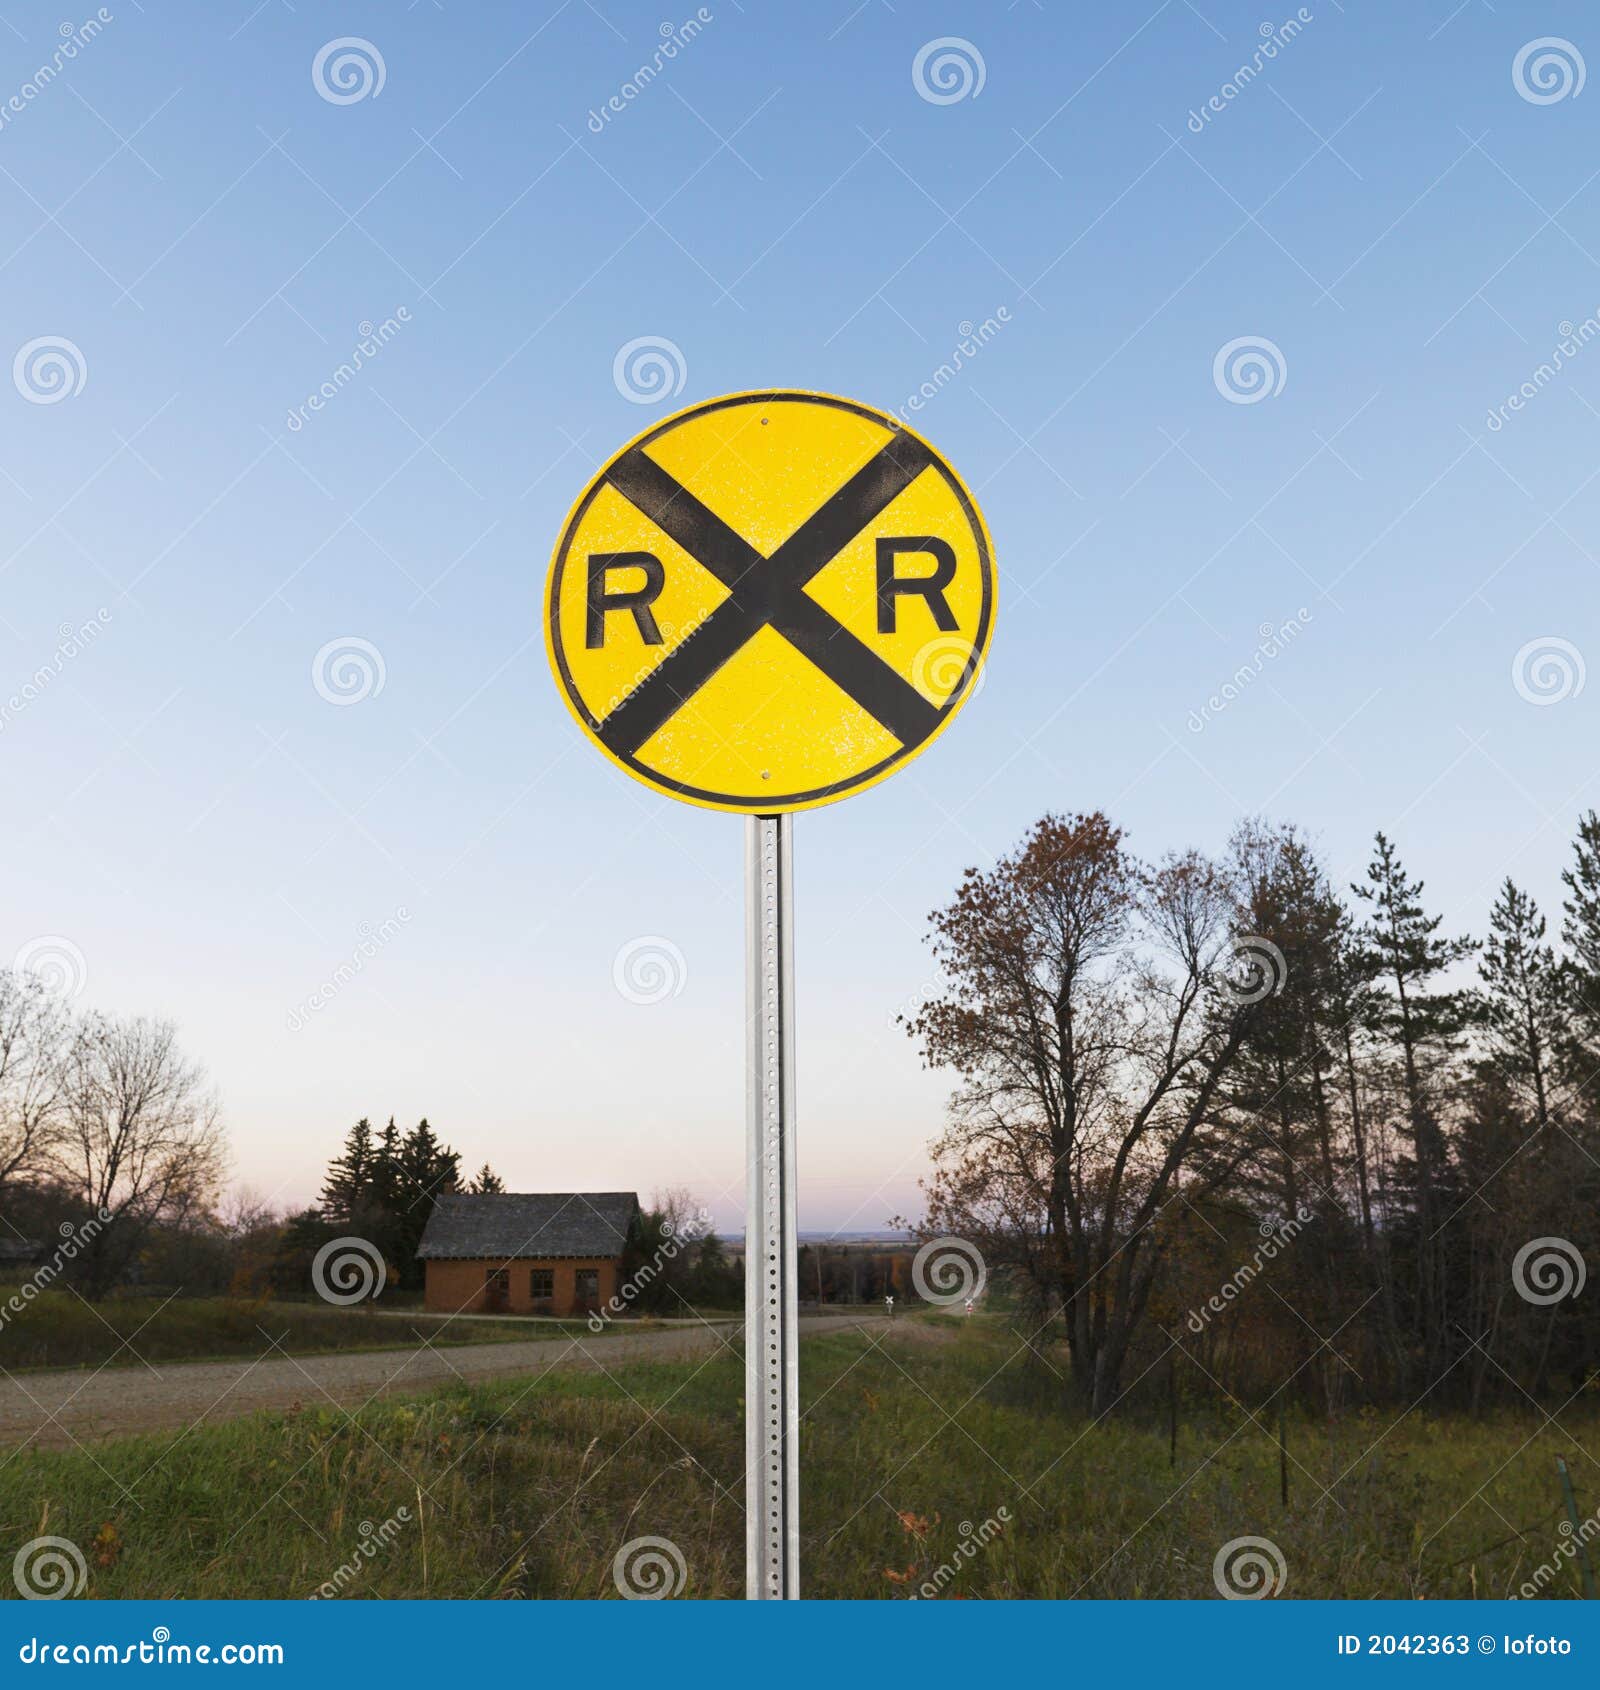 Почему знак желтый. Железнодорожный знак круглый. Желтый Железнодорожный знак. Дорожный знак желтый крест. На железной дороге круглый жёлтый знак.